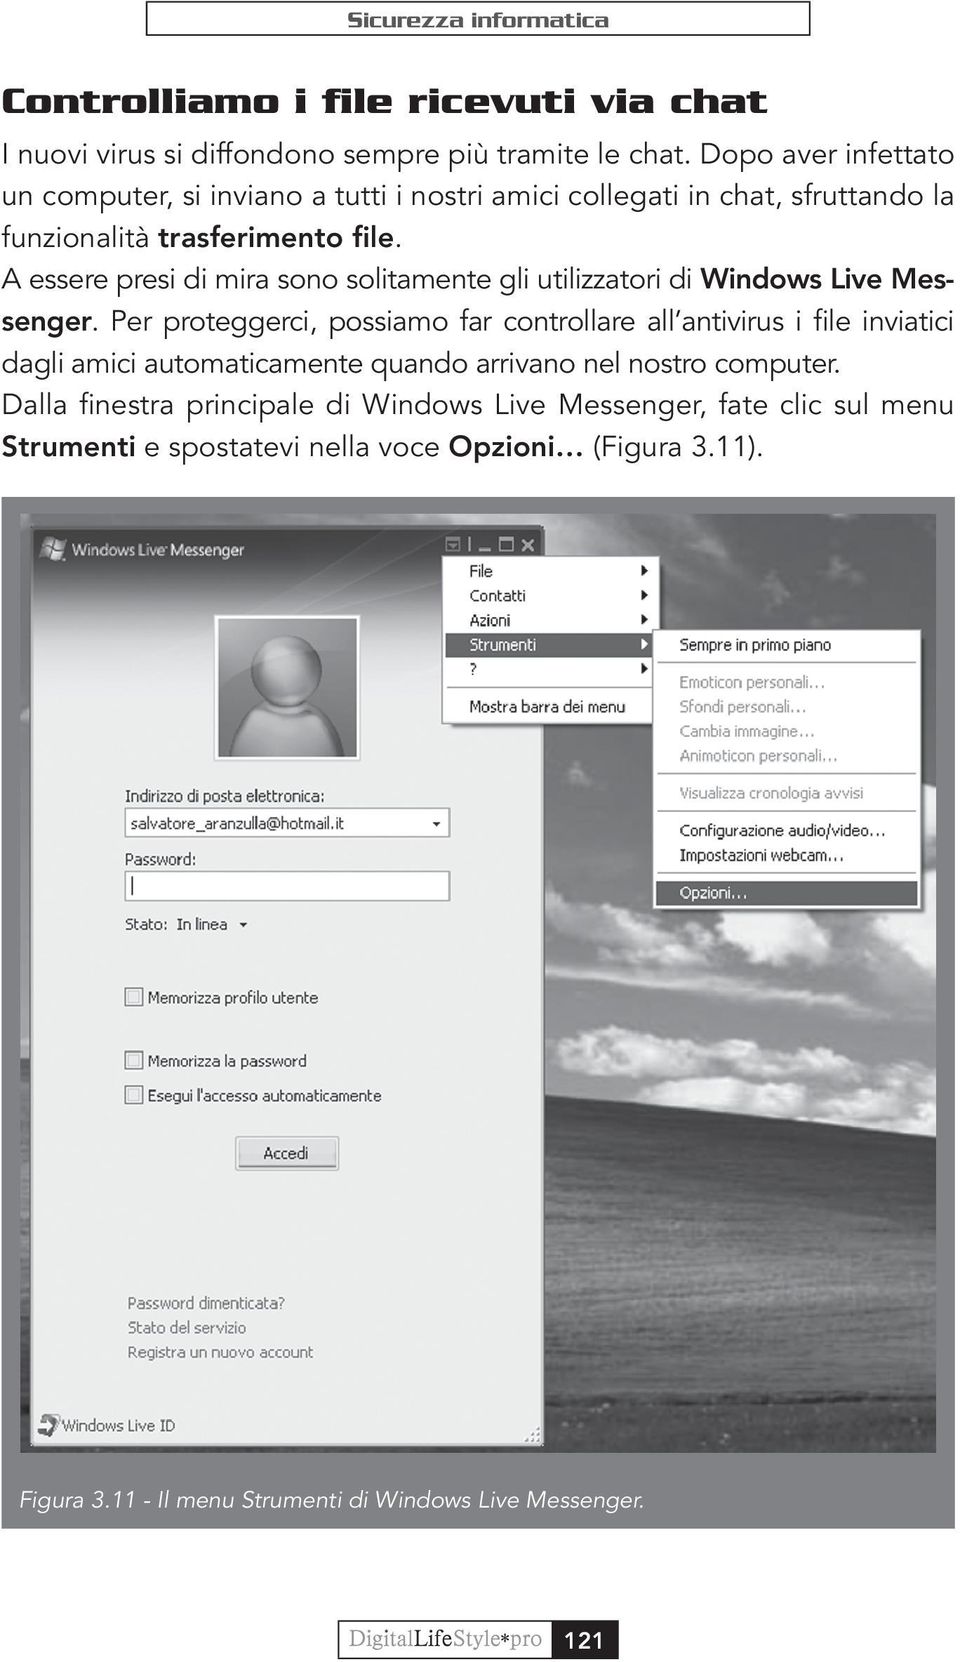 A essere presi di mira sono solitamente gli utilizzatori di Windows Live Messenger.